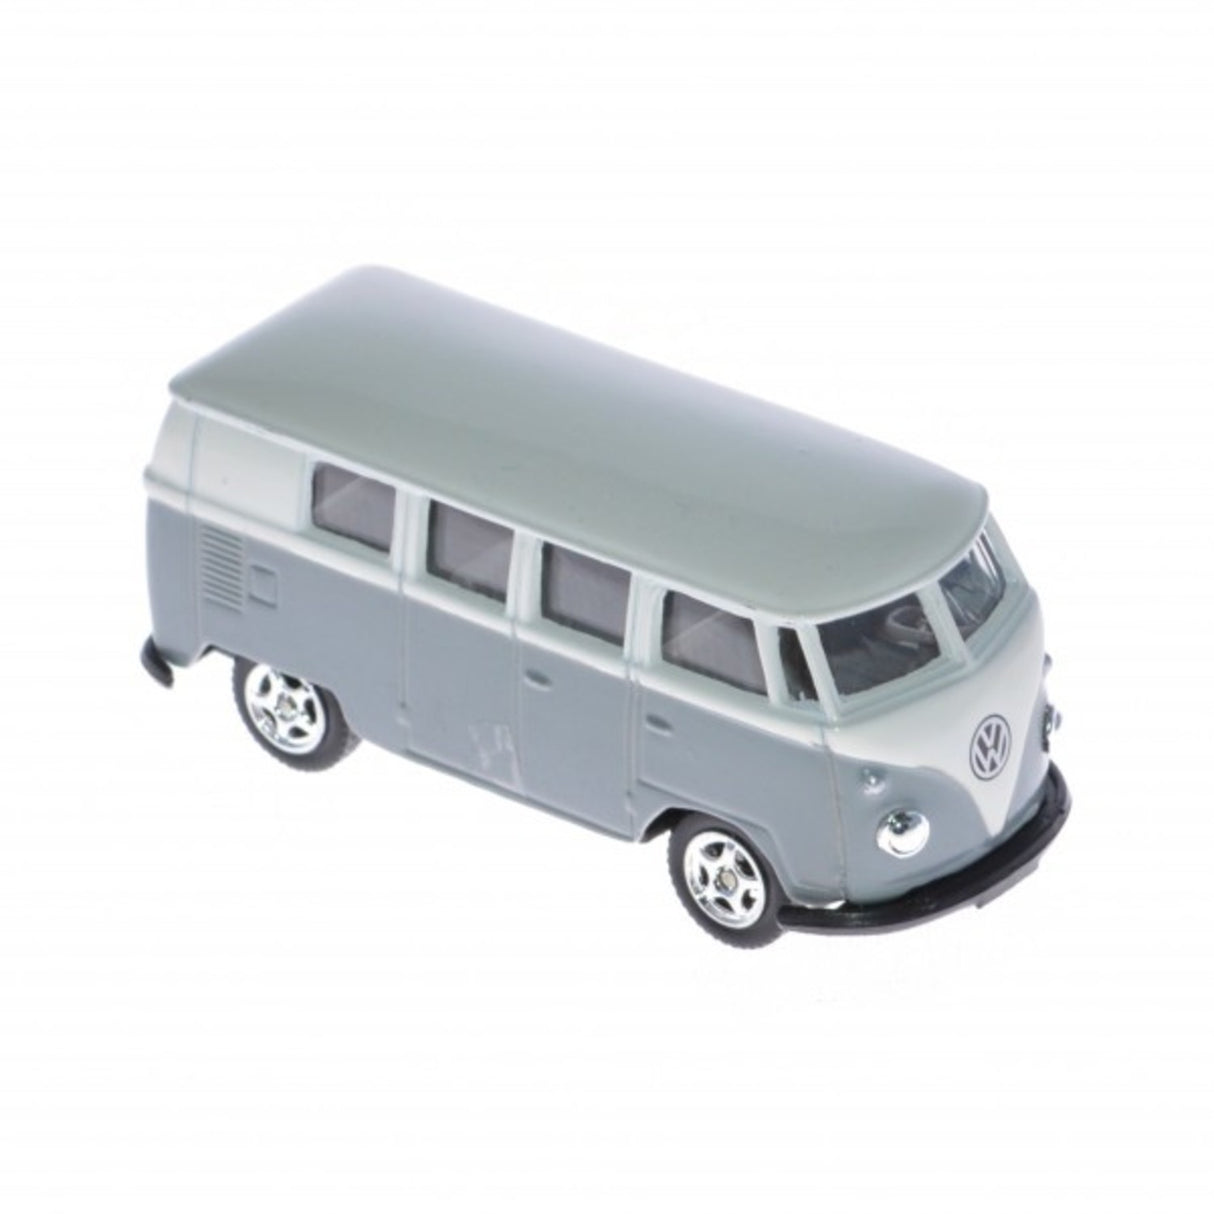 VW Bulli Modellauto 1:60  Kaufen Sie jetzt Ihren VW T1 Bus 1963! -  Modellbus cool retro Männer Geschenk 1963 Auto Modell Modellauto. –